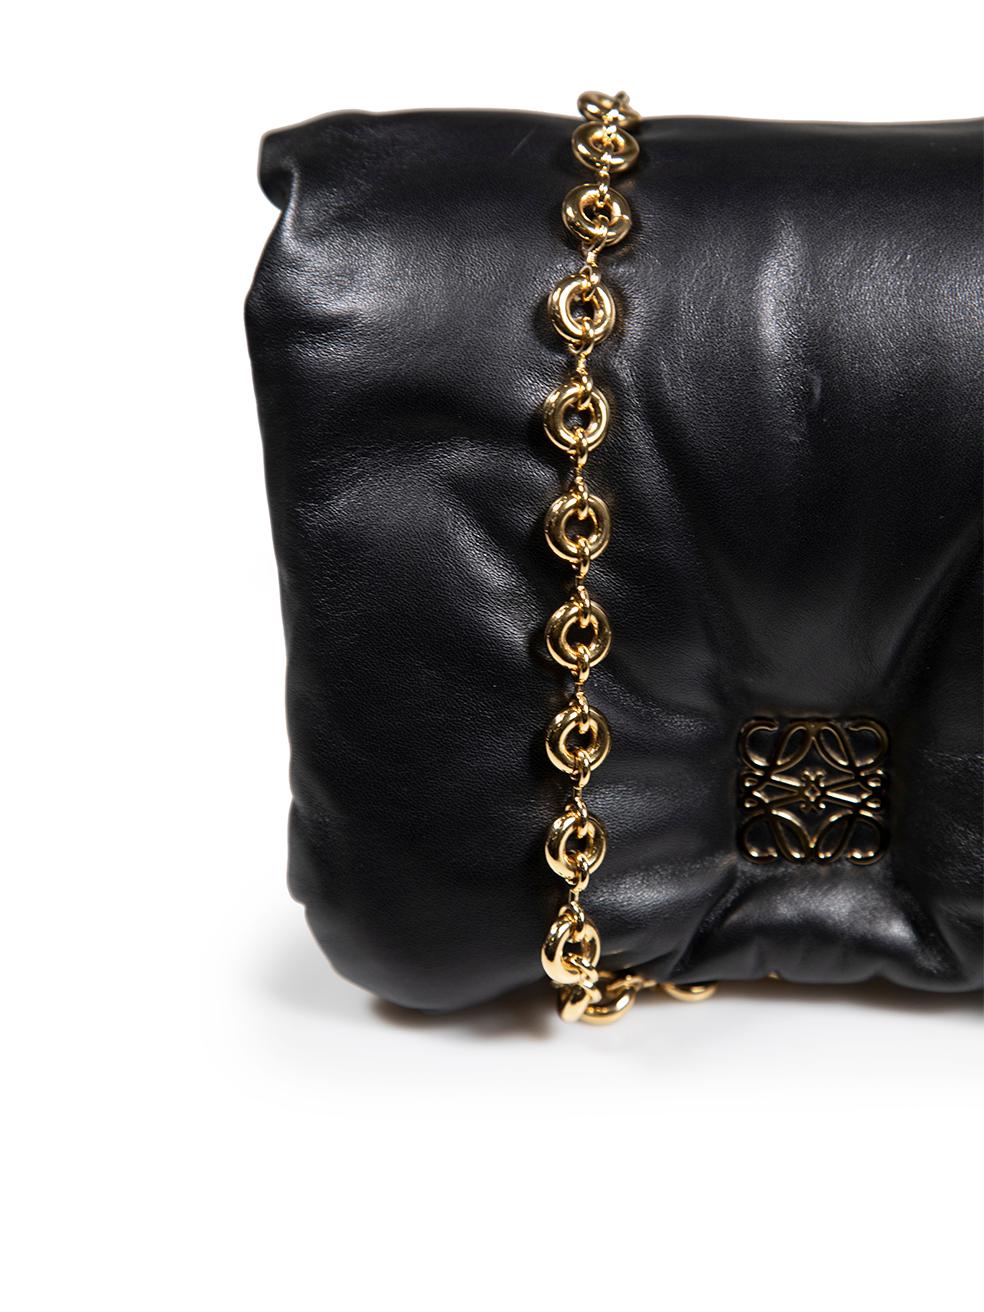 Loewe Black Nappa Leather Puffer Goya Shoulder Bag For Sale 3